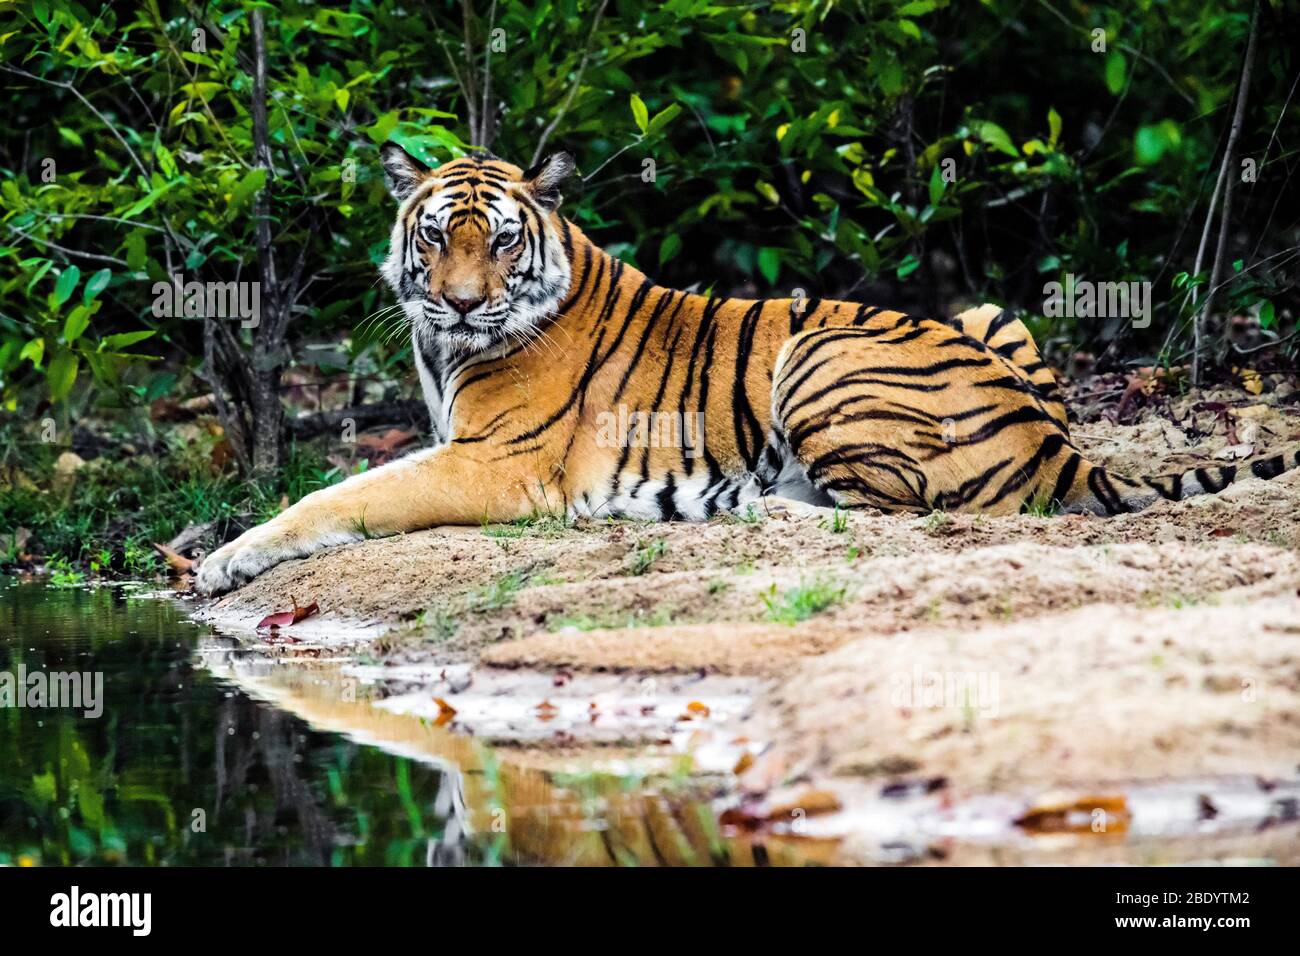 Tigre curioso mirando la cámara, India Foto de stock